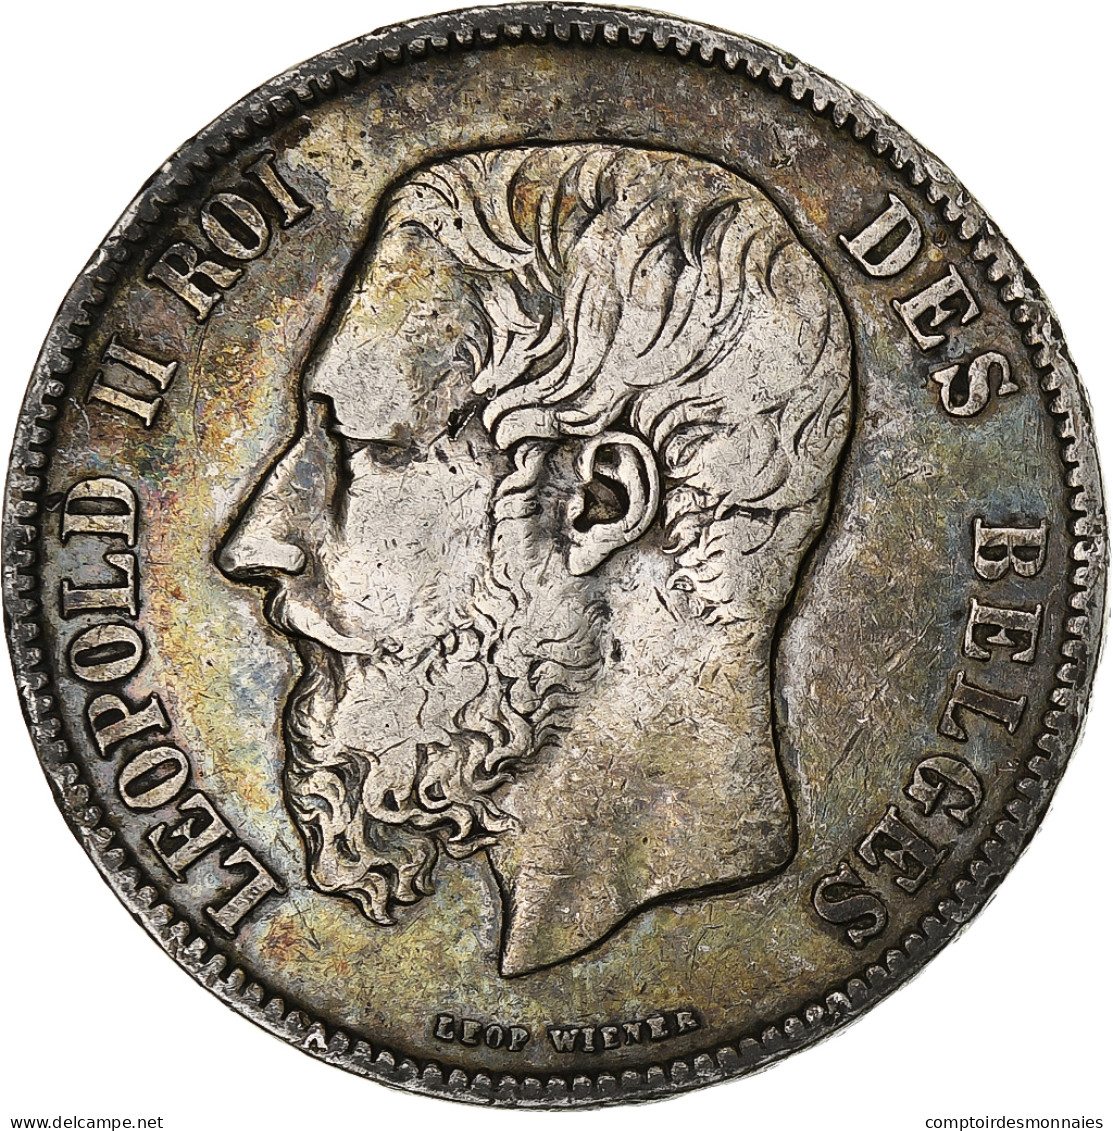 Monnaie, Belgique, Leopold II, 5 Francs, 5 Frank, 1870, Bruxelles, TB, Argent - 5 Francs